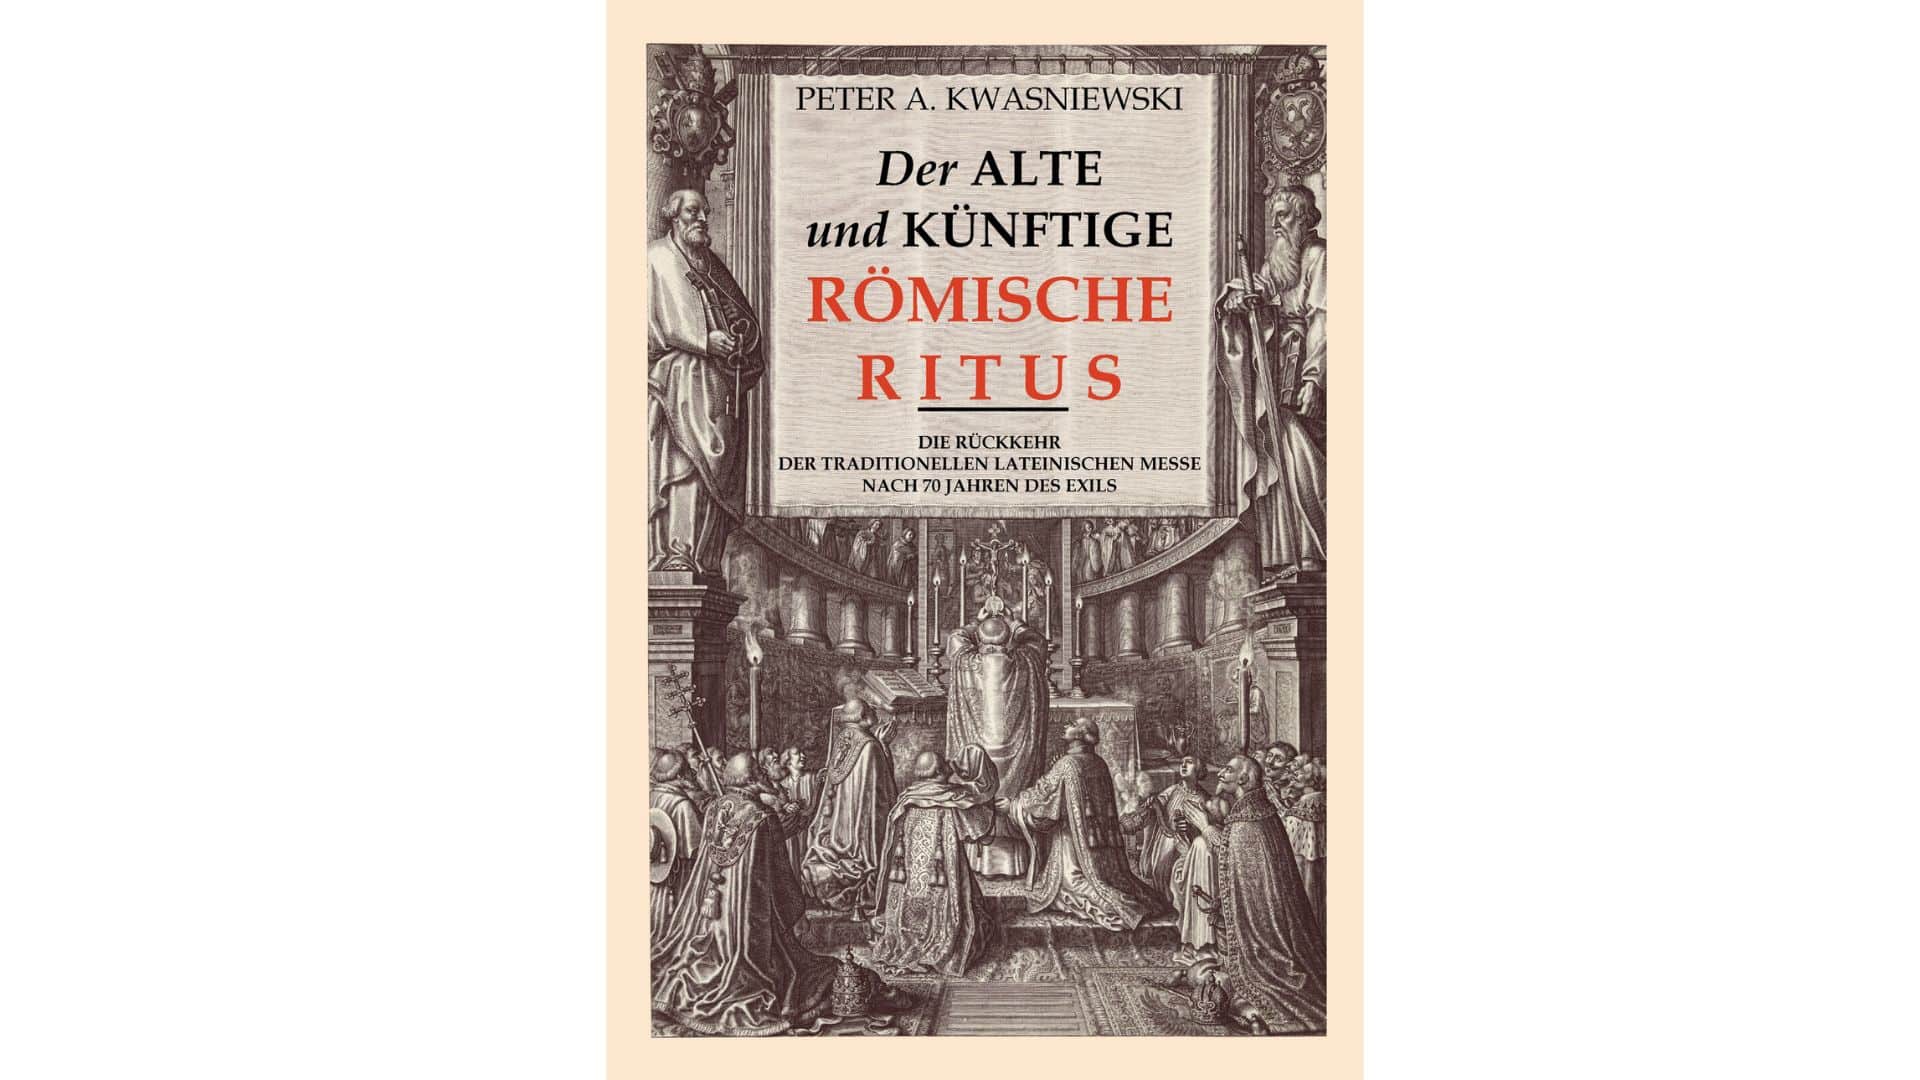 Peter Kwasniewski, Der alte und künftige römische Ritus. Die Rückkehr der traditionellen lateinischen Messe nach 70 Jahren des Exils